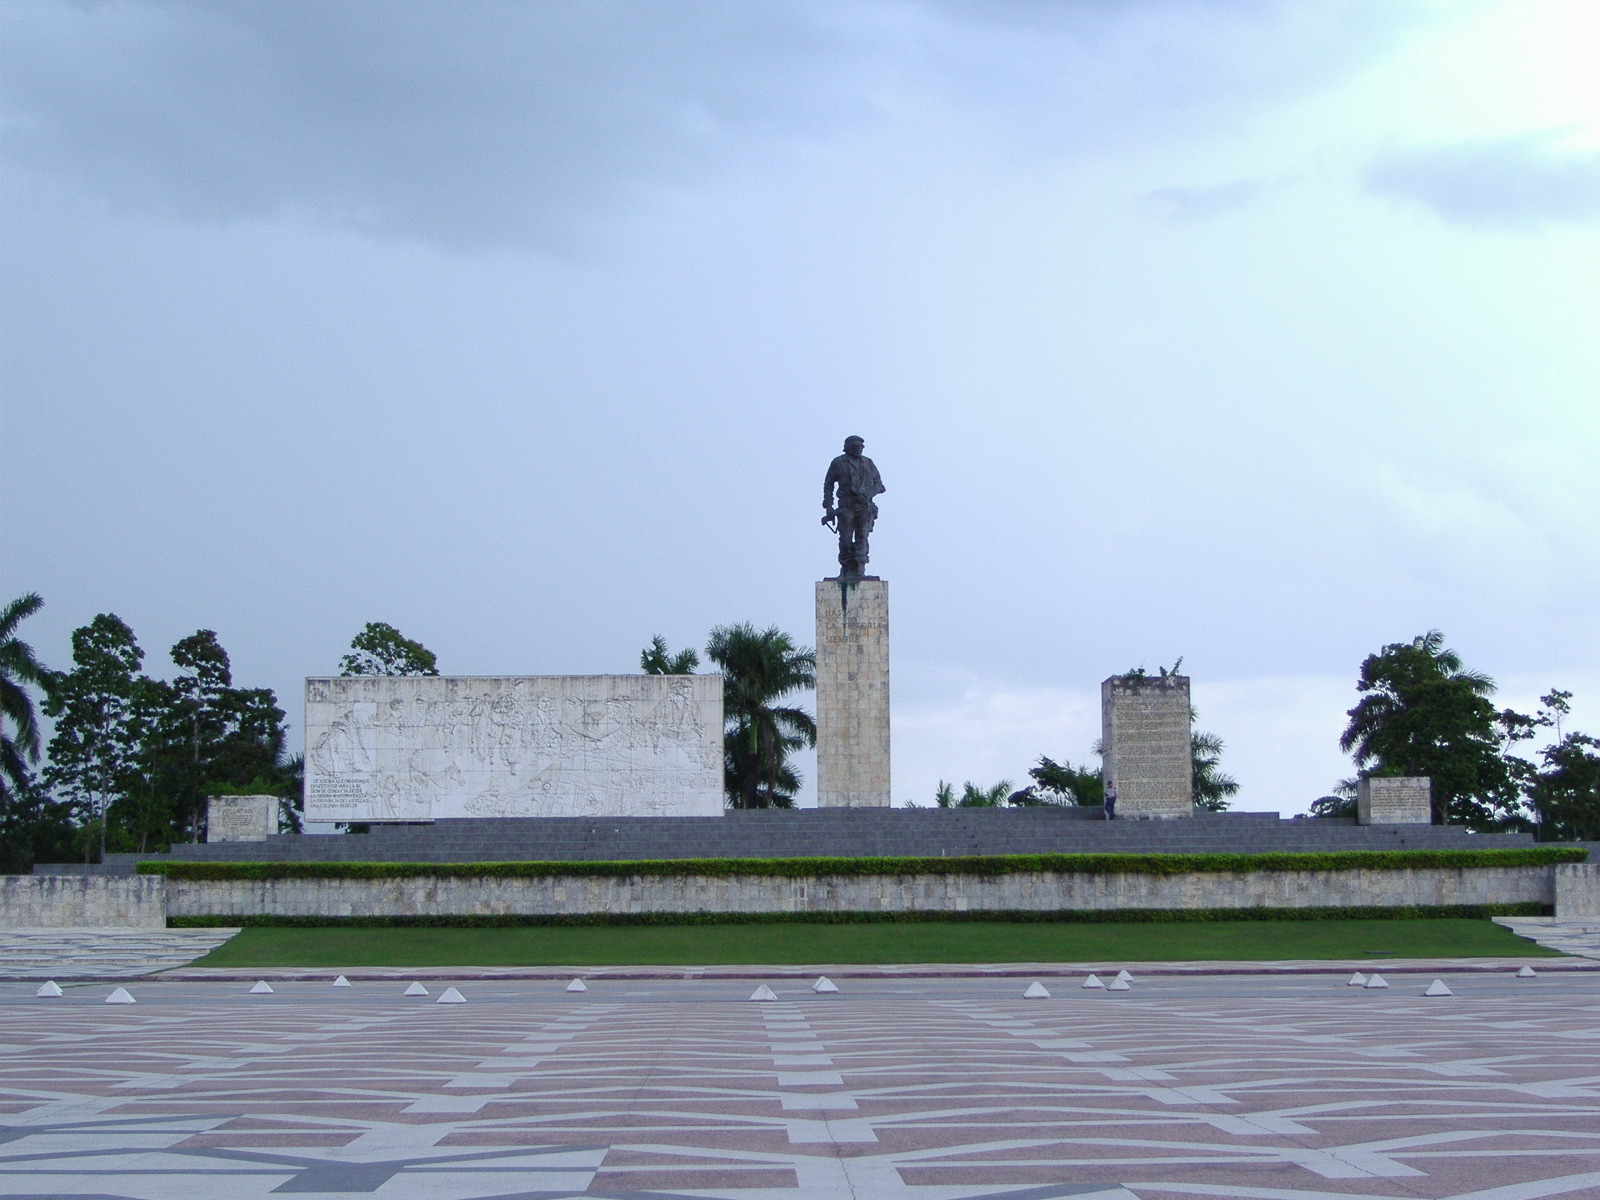 Monumento dedicado al Che Guevara en Santa Clara, Cuba